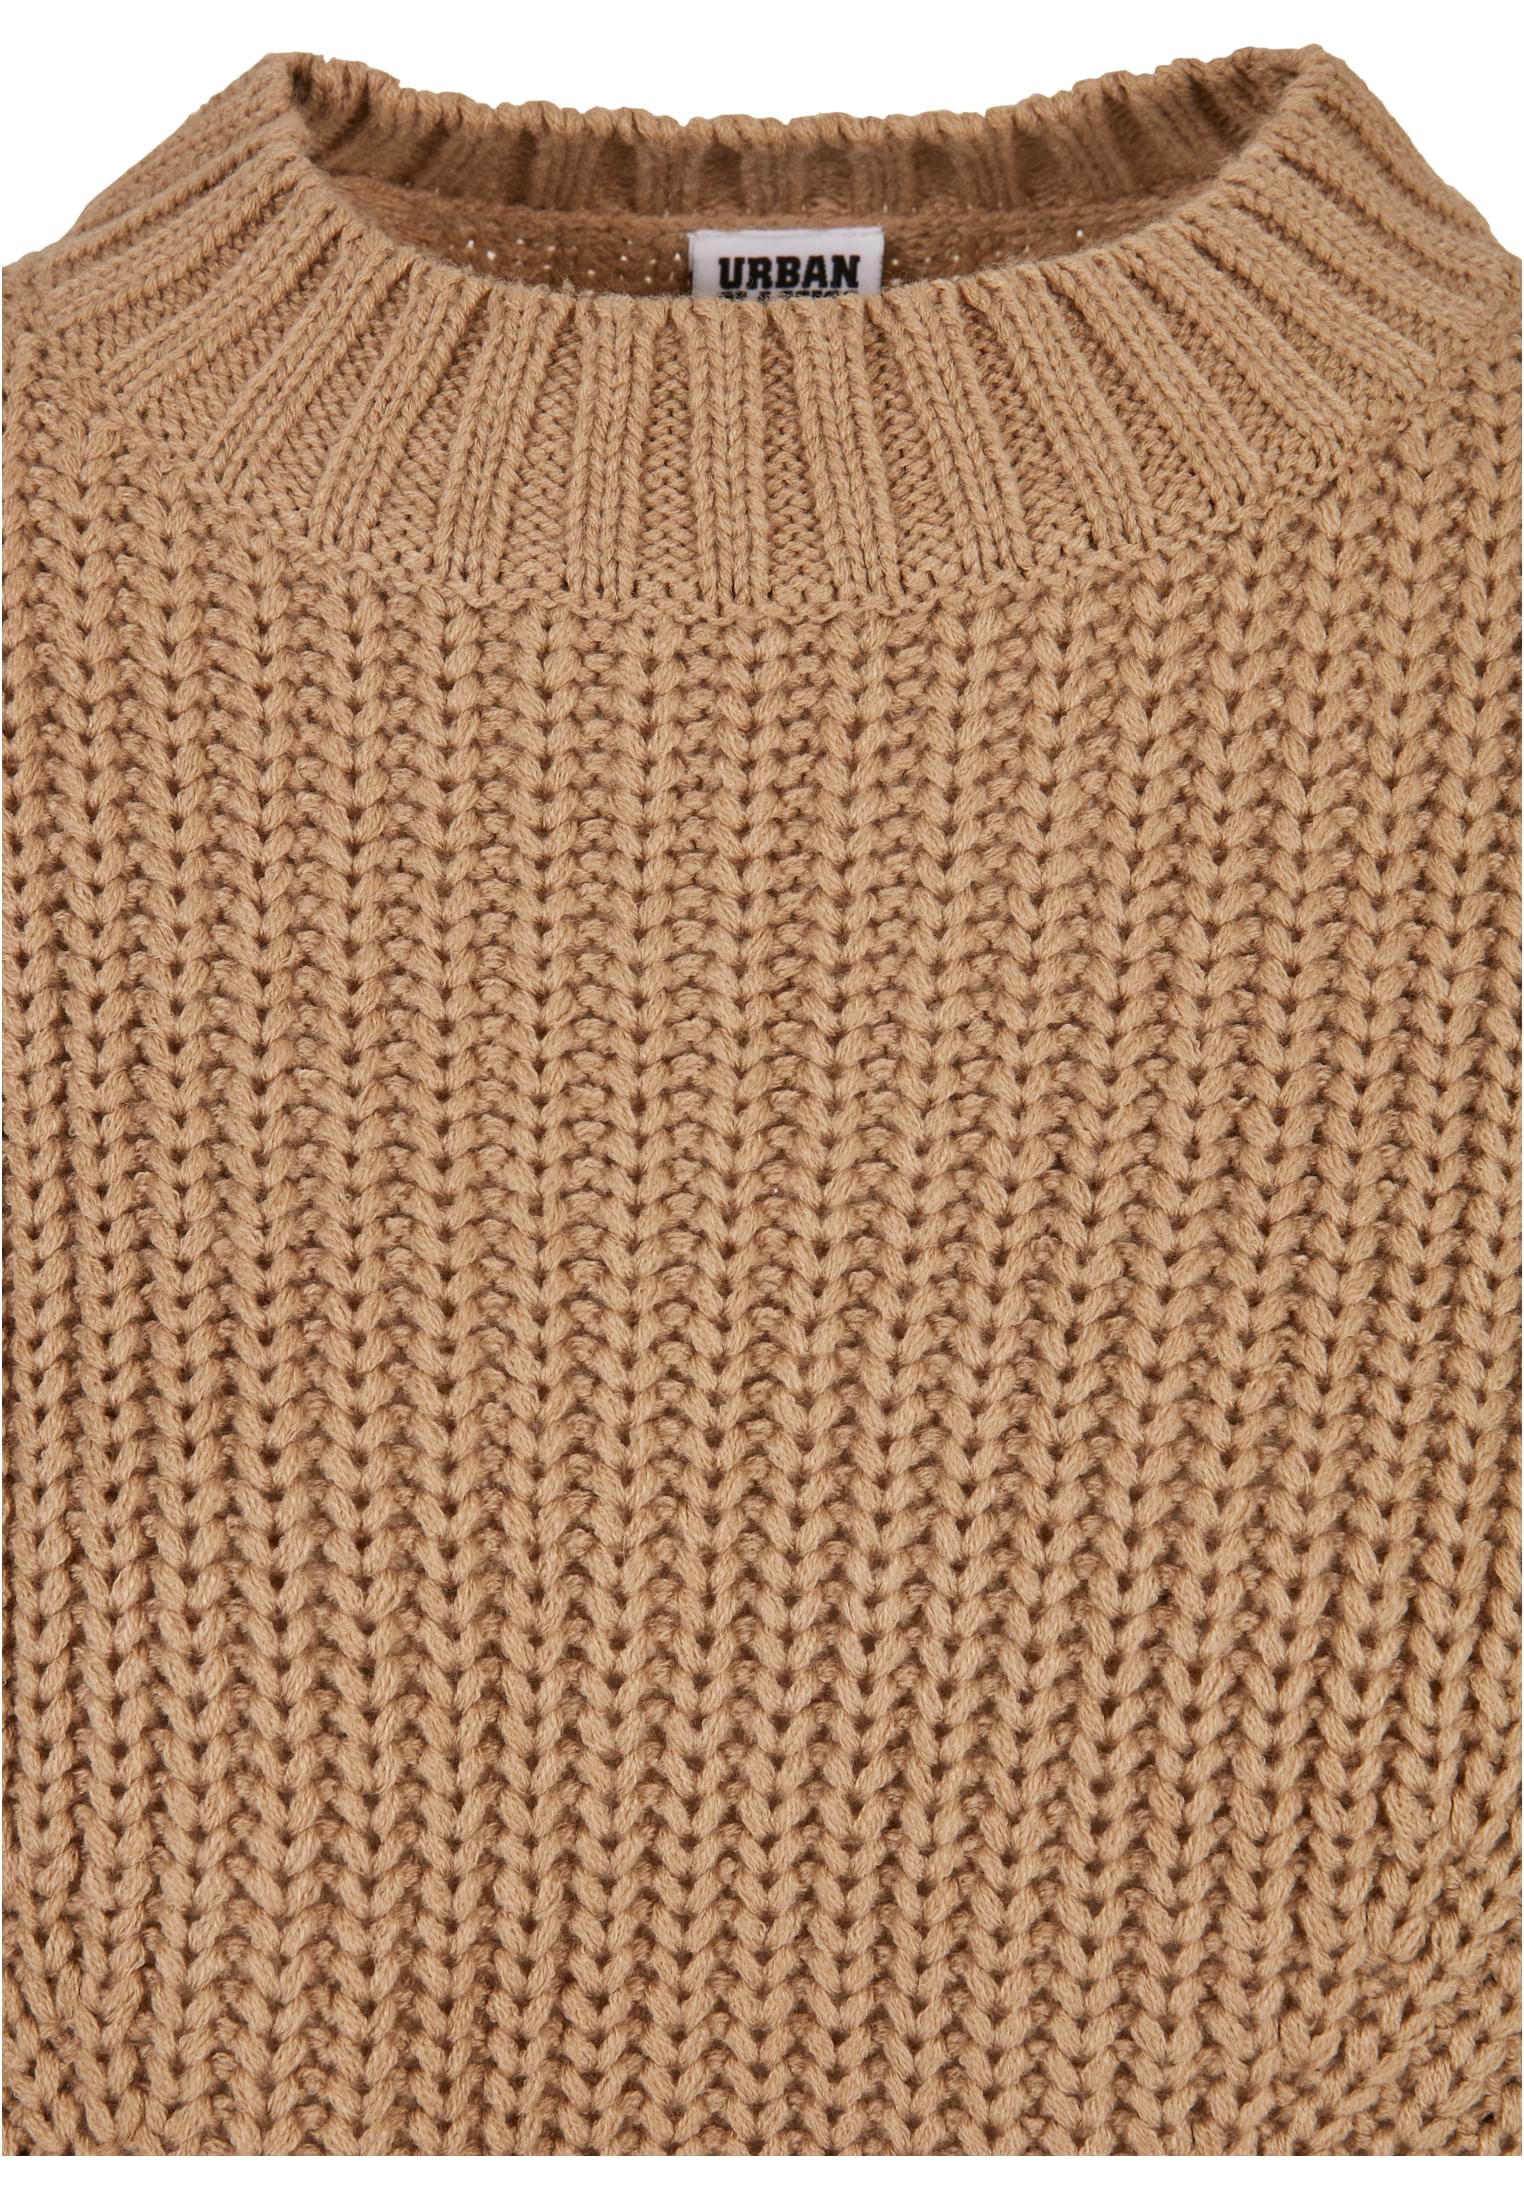 TB-2359 wide ov sweater